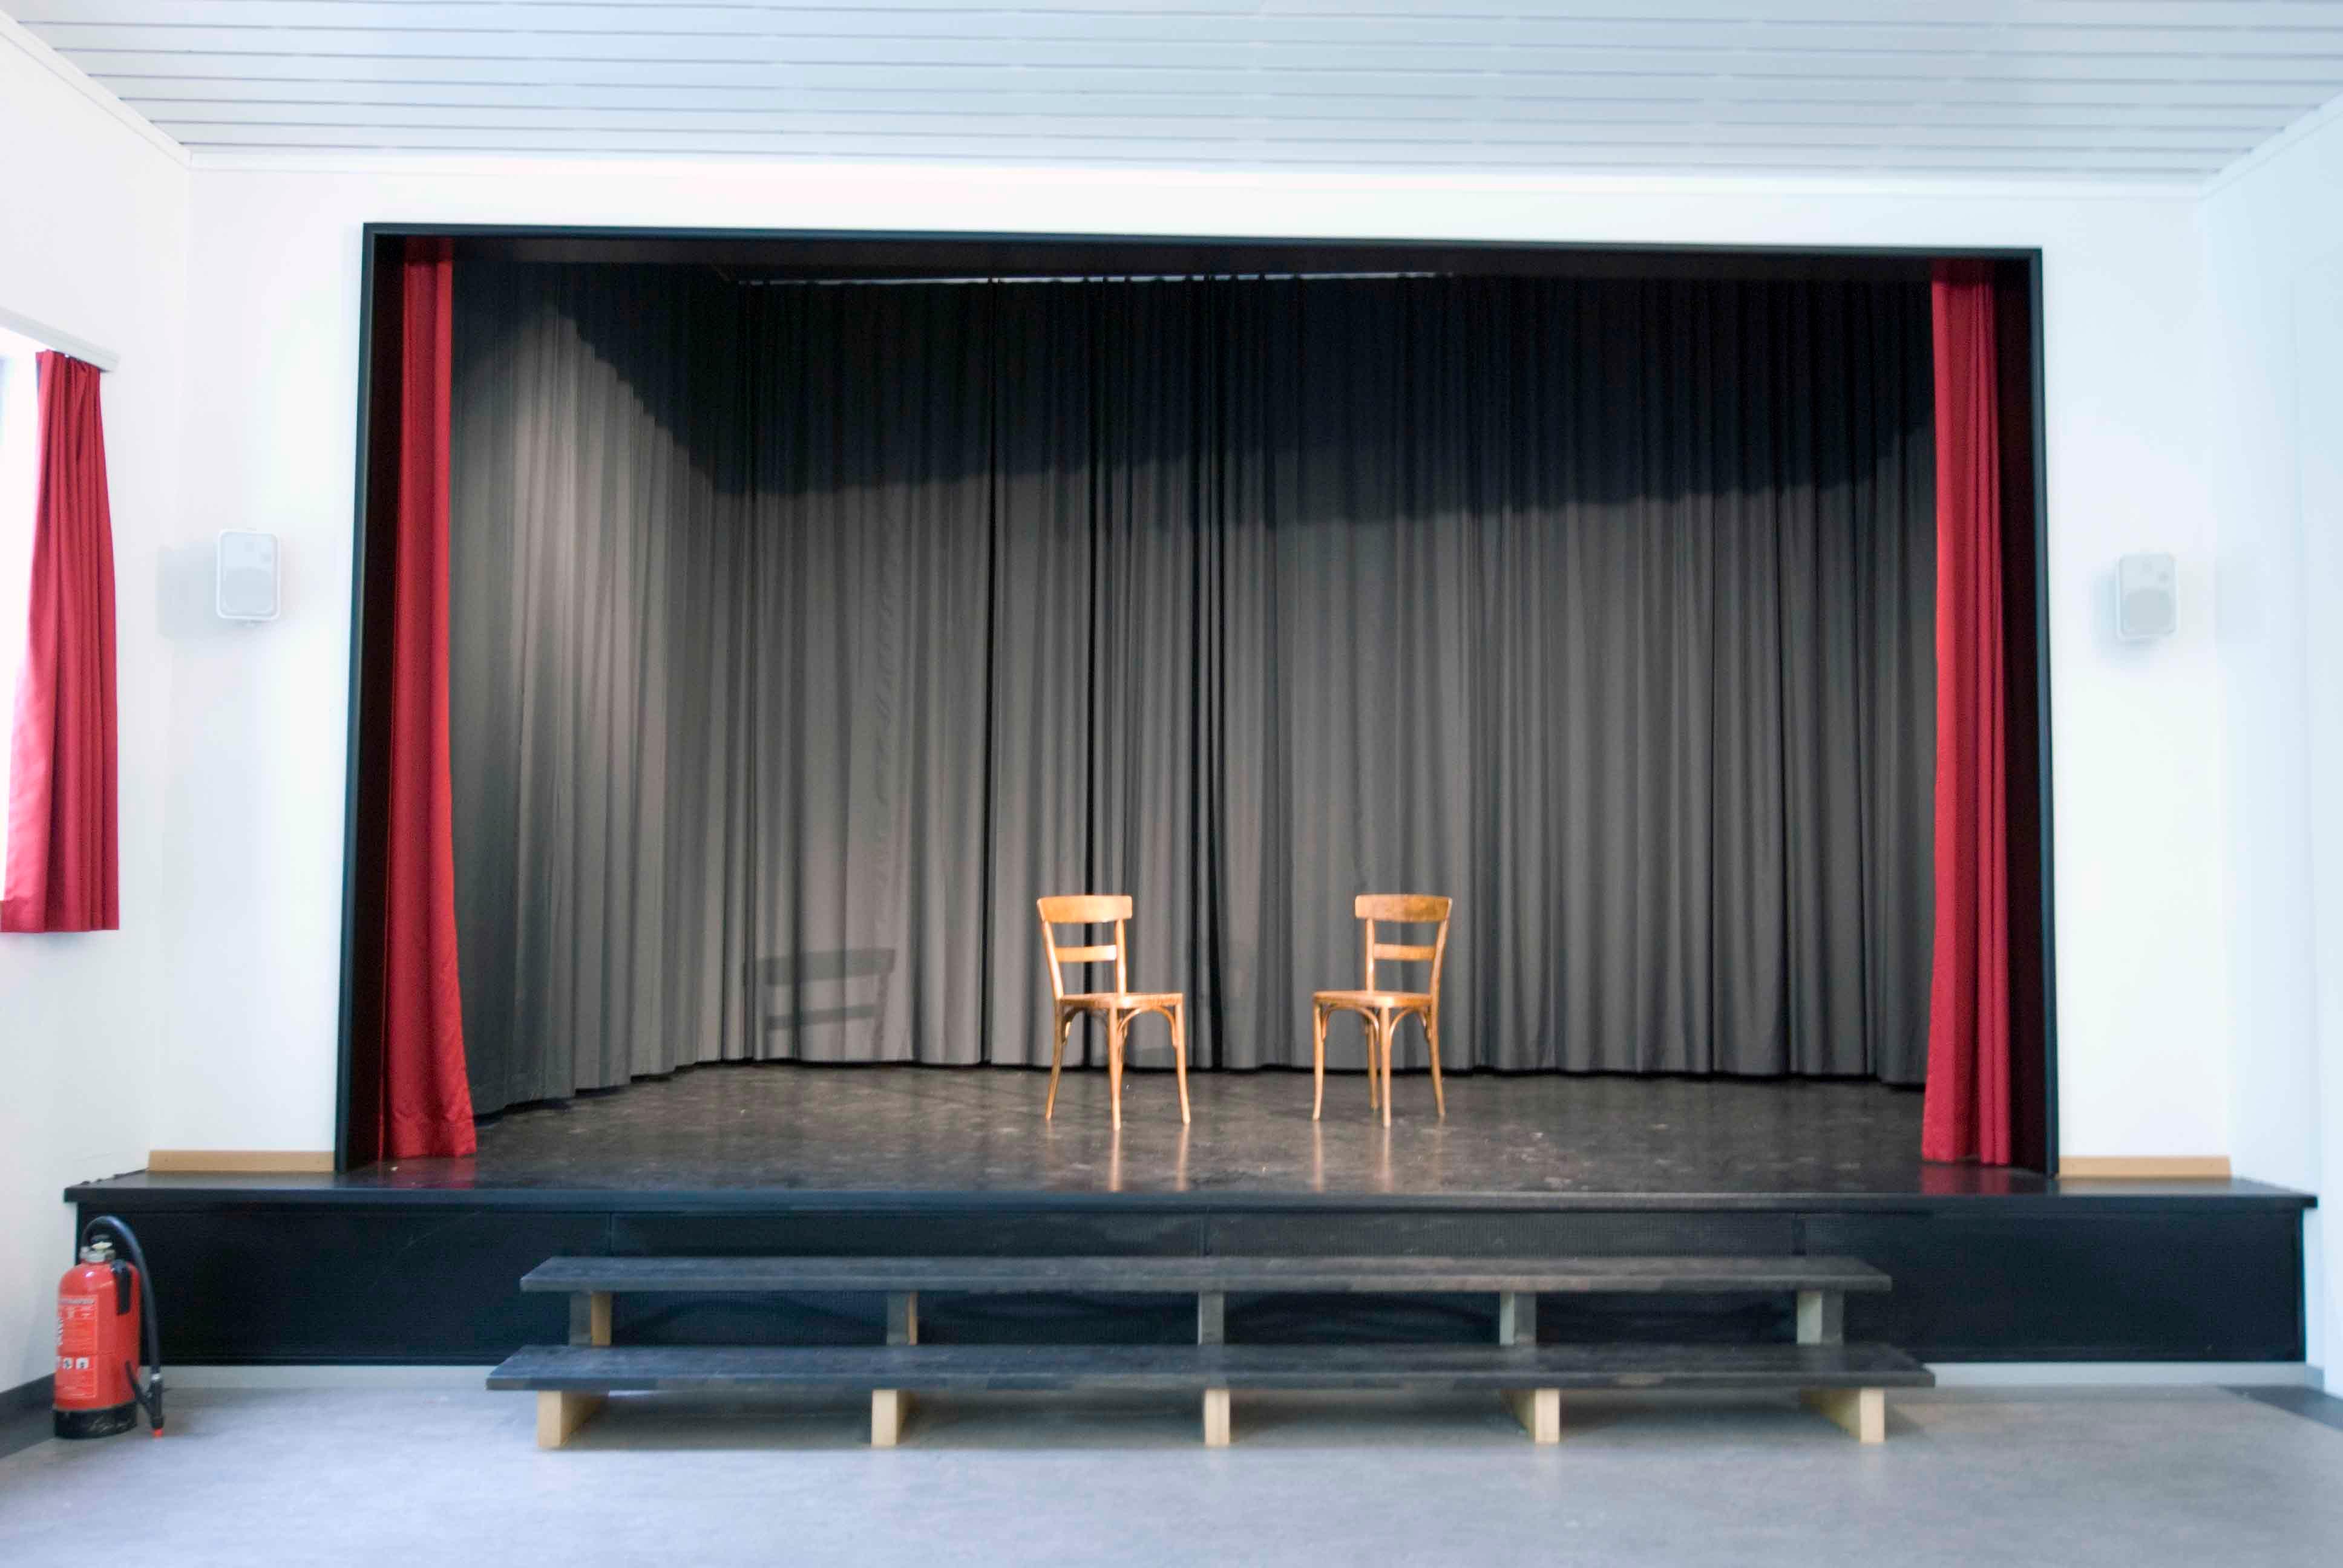  Architektur-Reportage Umbau Theater Matte: Die neue Bühne